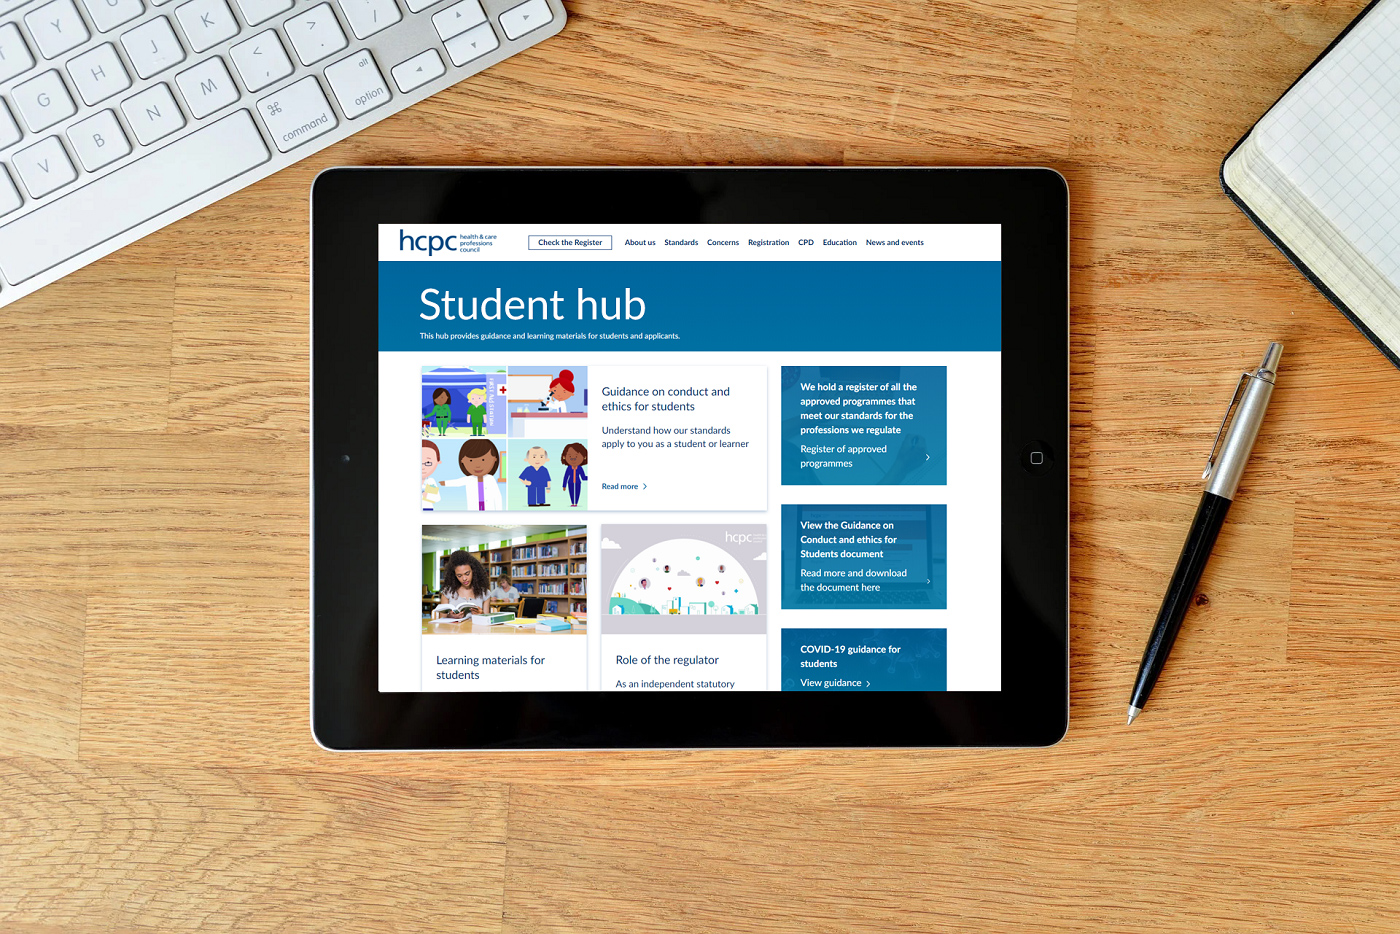 Student-hub-image.jpg